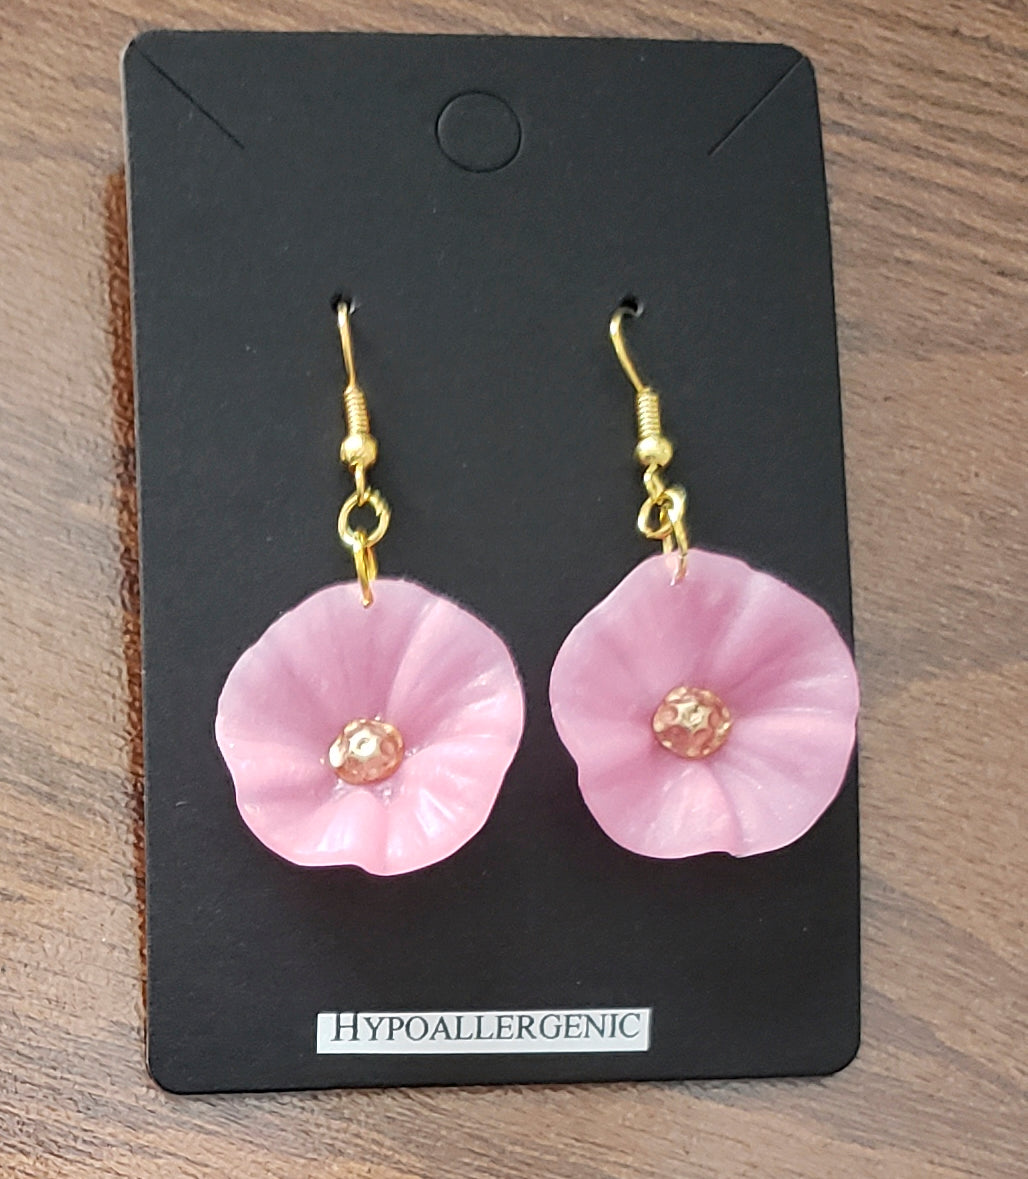 Spring flower earrings $20